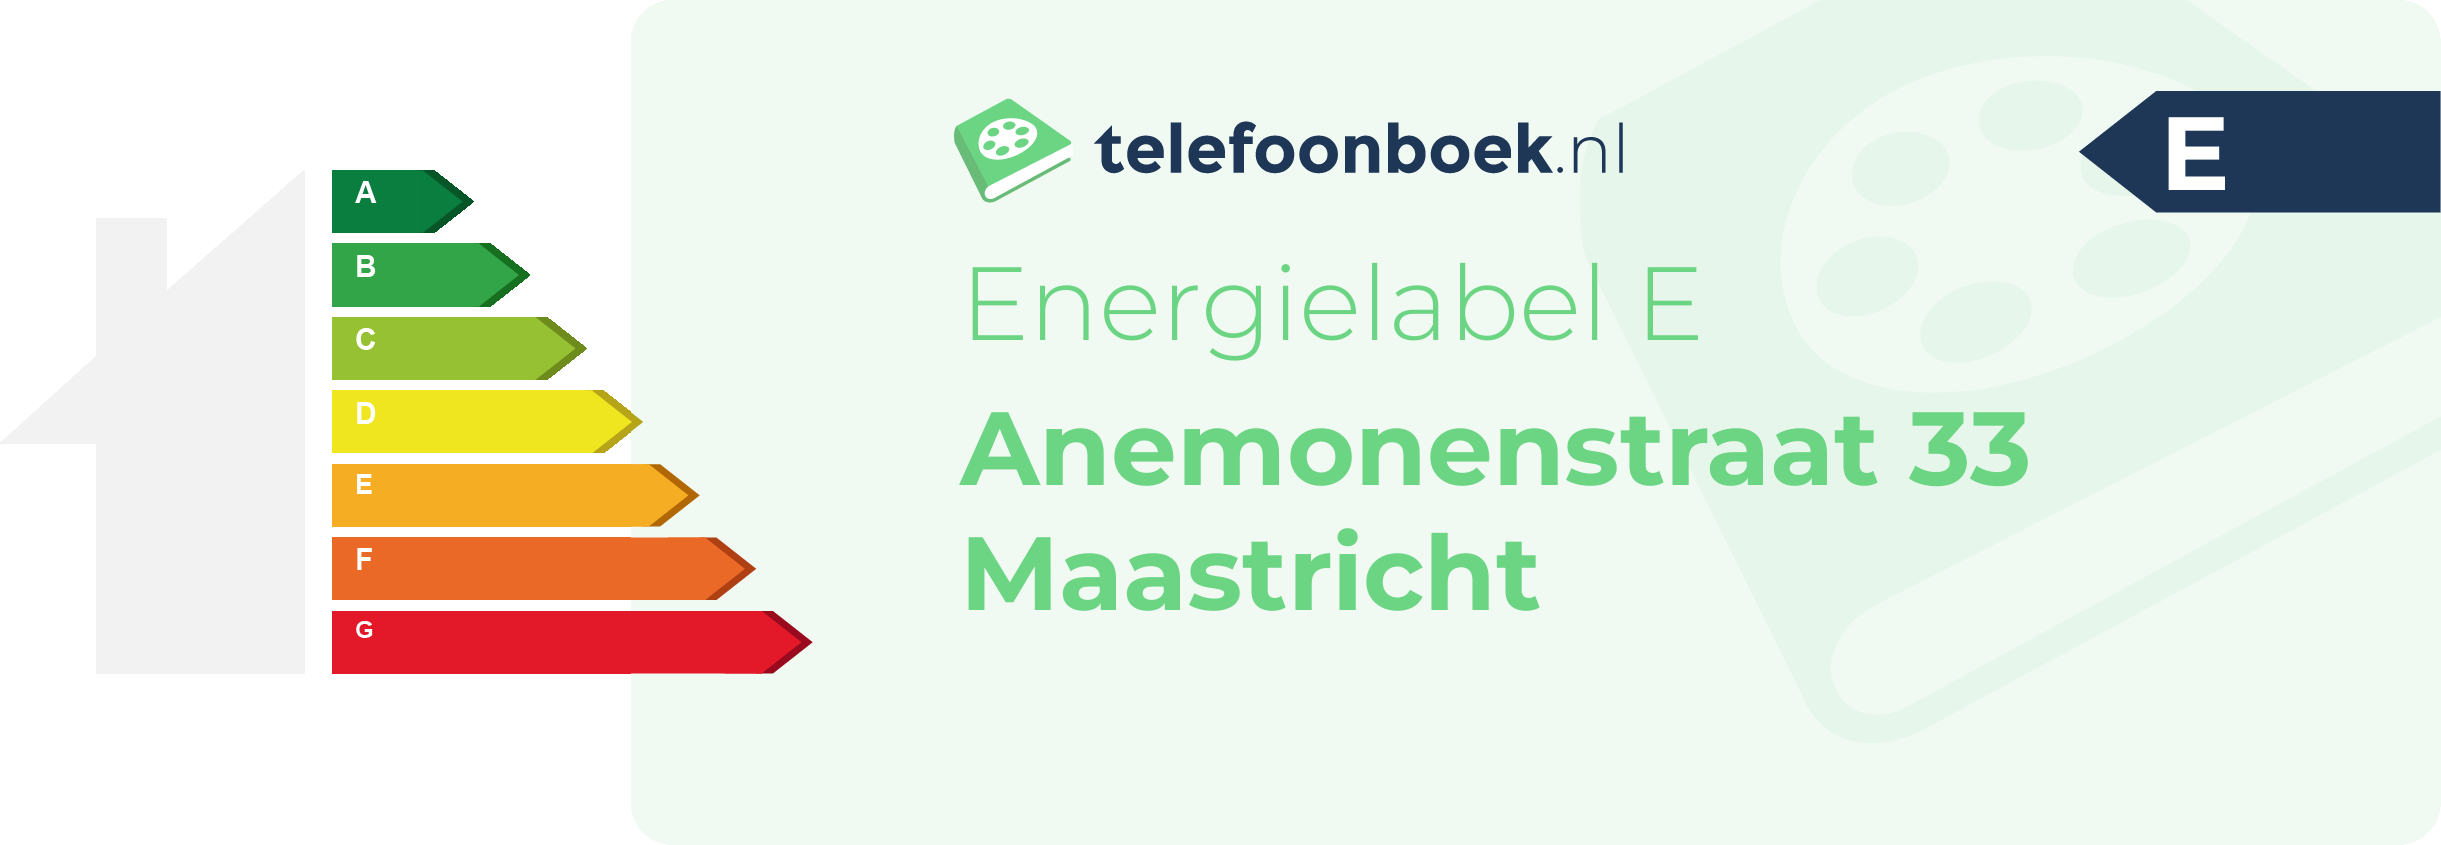 Energielabel Anemonenstraat 33 Maastricht